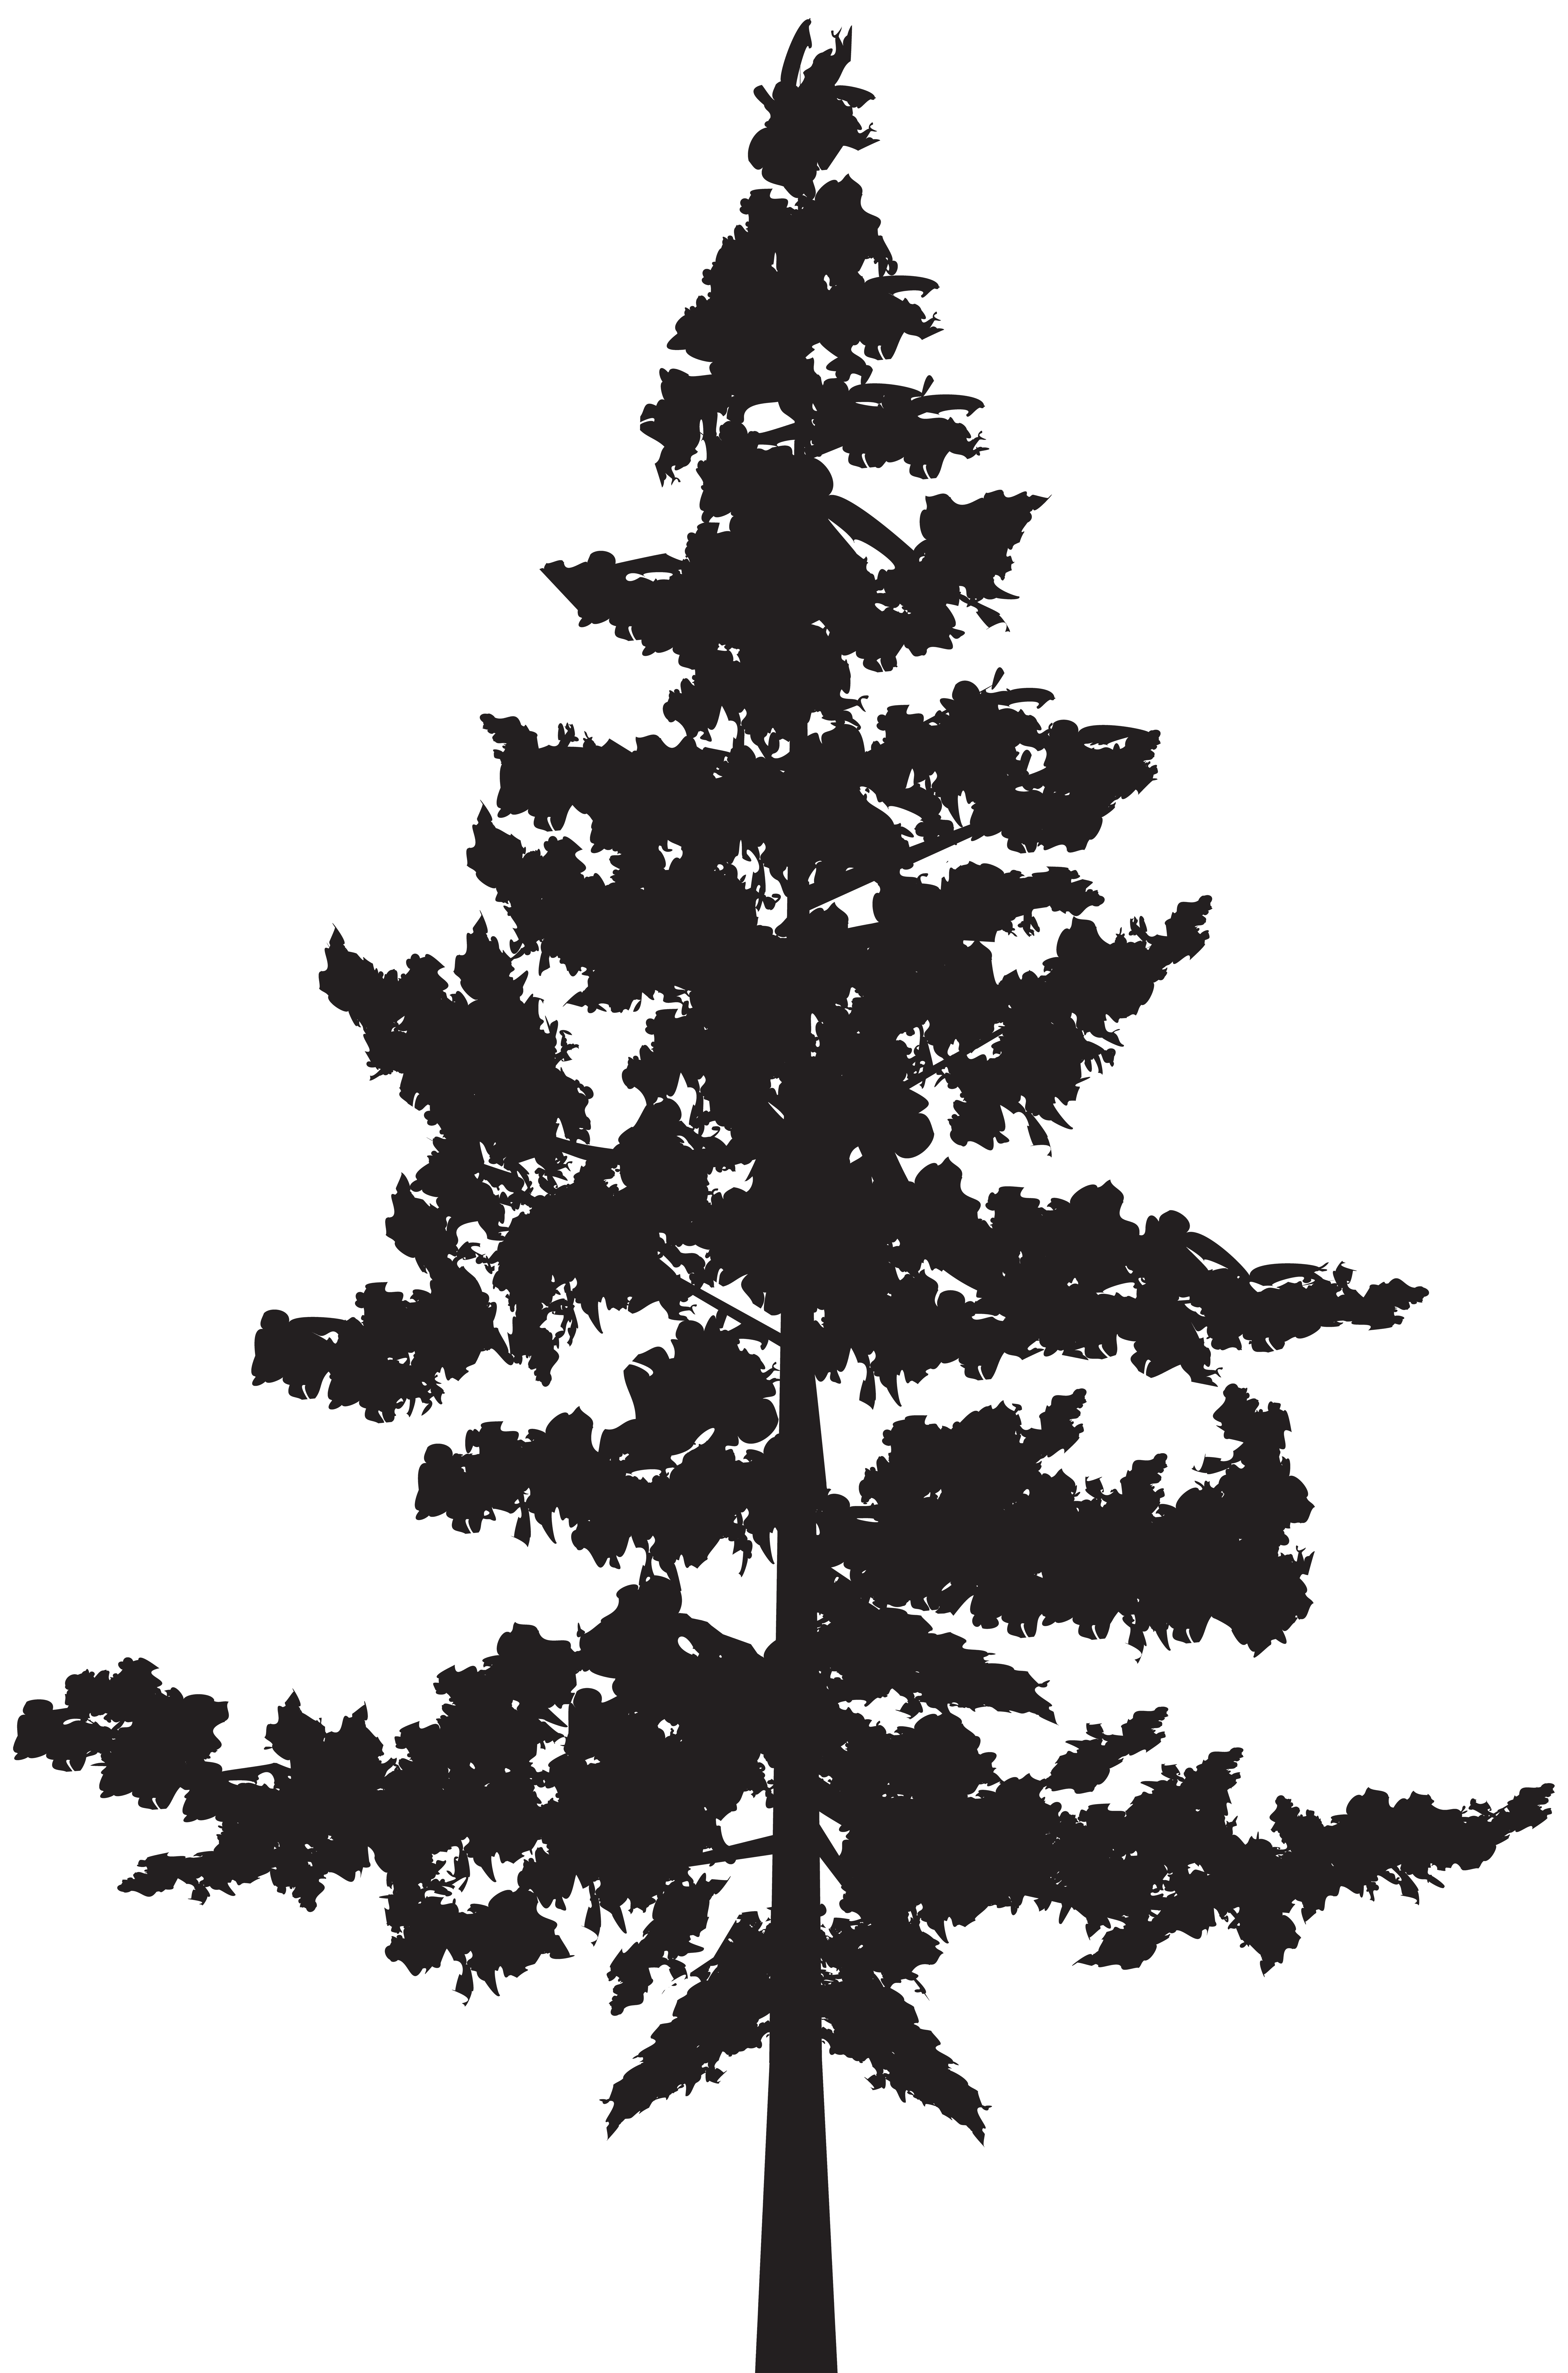 Black pine Tree Pinus contorta.